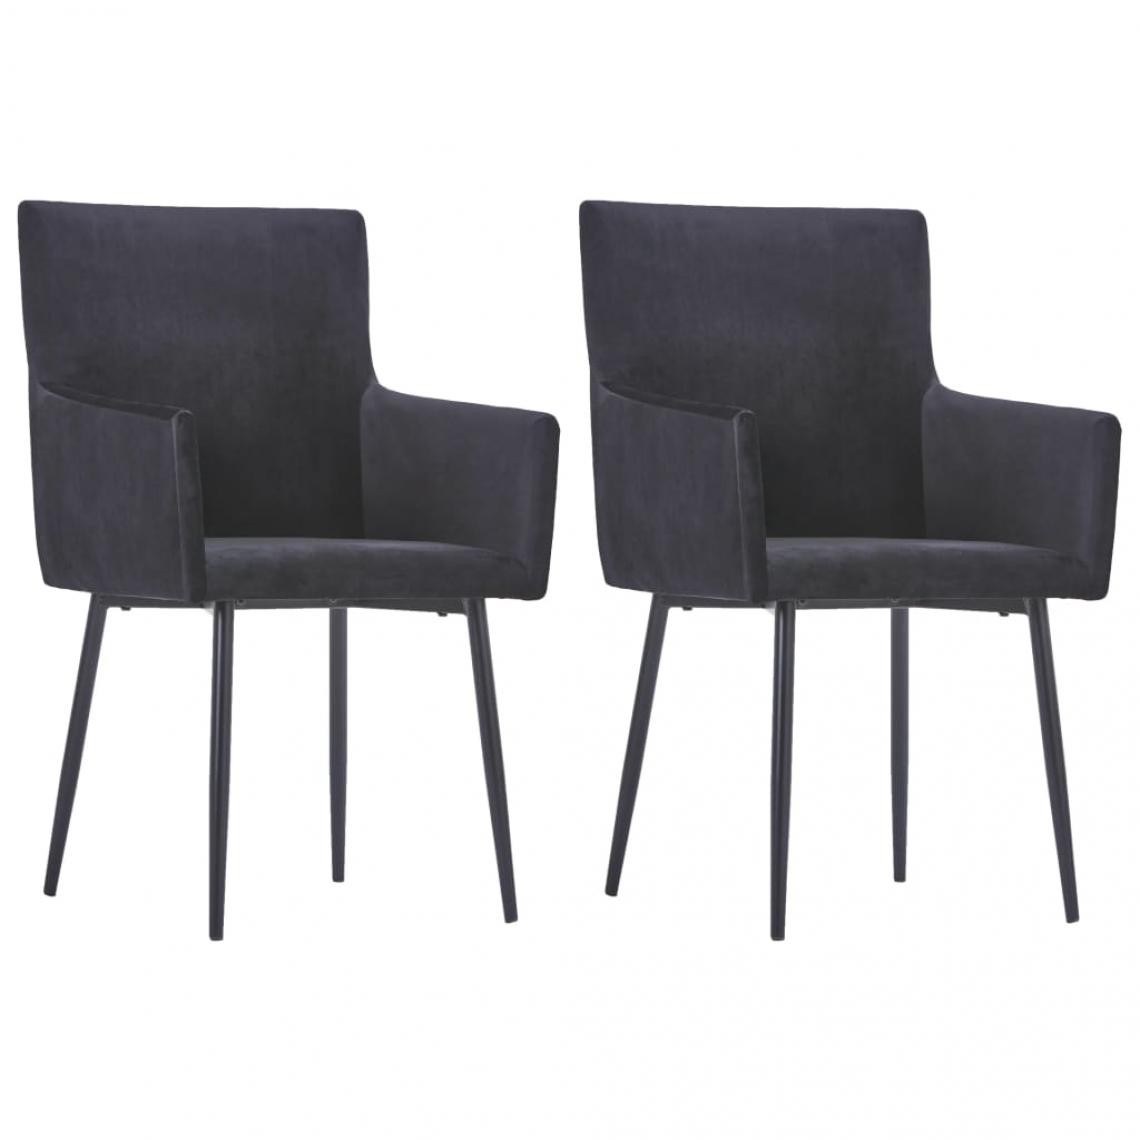 Decoshop26 - Lot de 2 chaises de salle à manger cuisine design moderne avec accoudoirs velours noir CDS020145 - Chaises